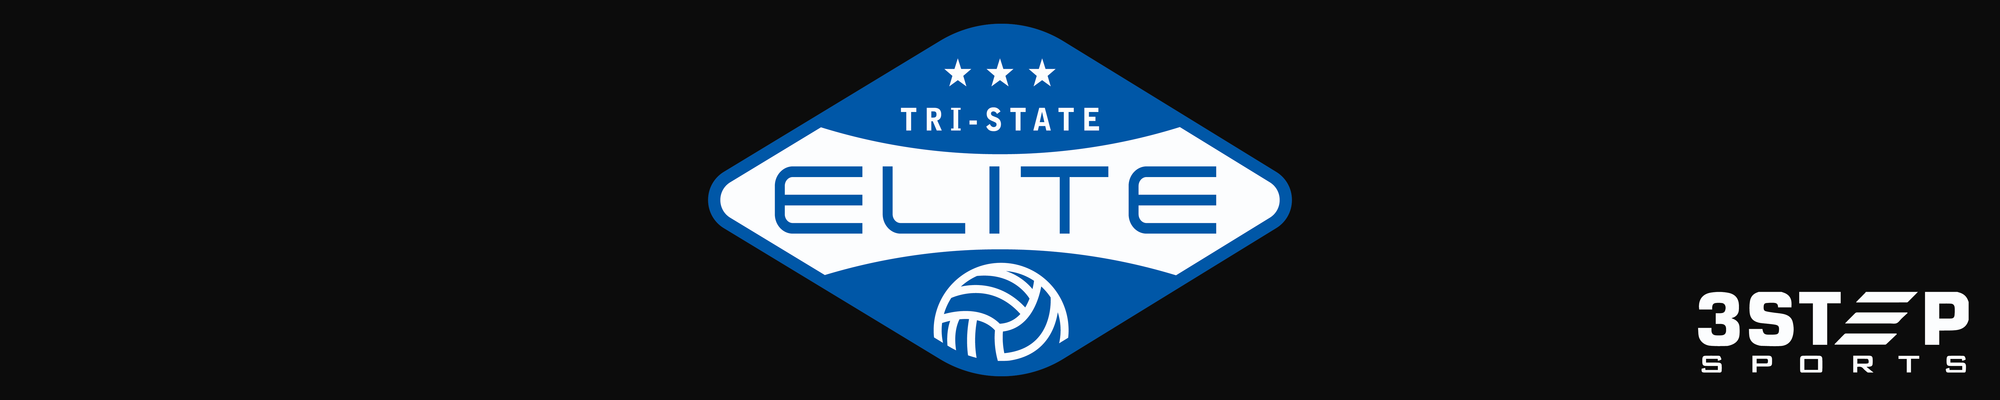 Tri-State Elite